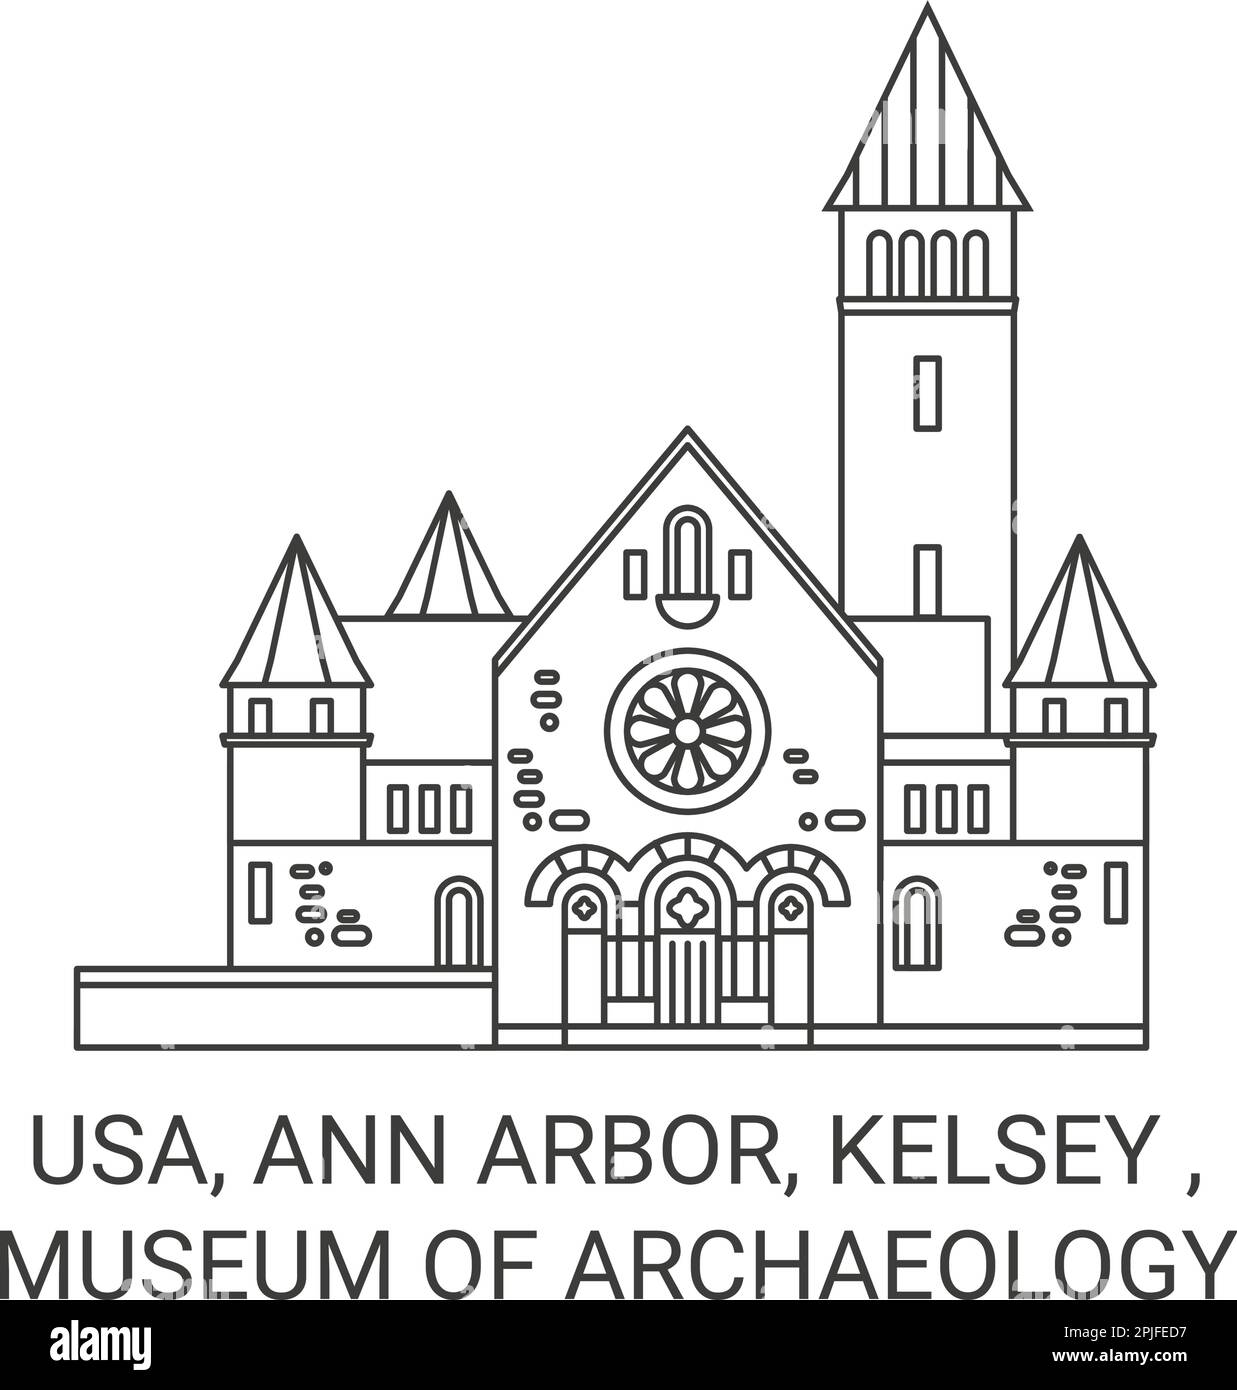 Usa, Ann Arbor, Kelsey , Museum Of Archaeology travel landmark vector illustration Stock Vector